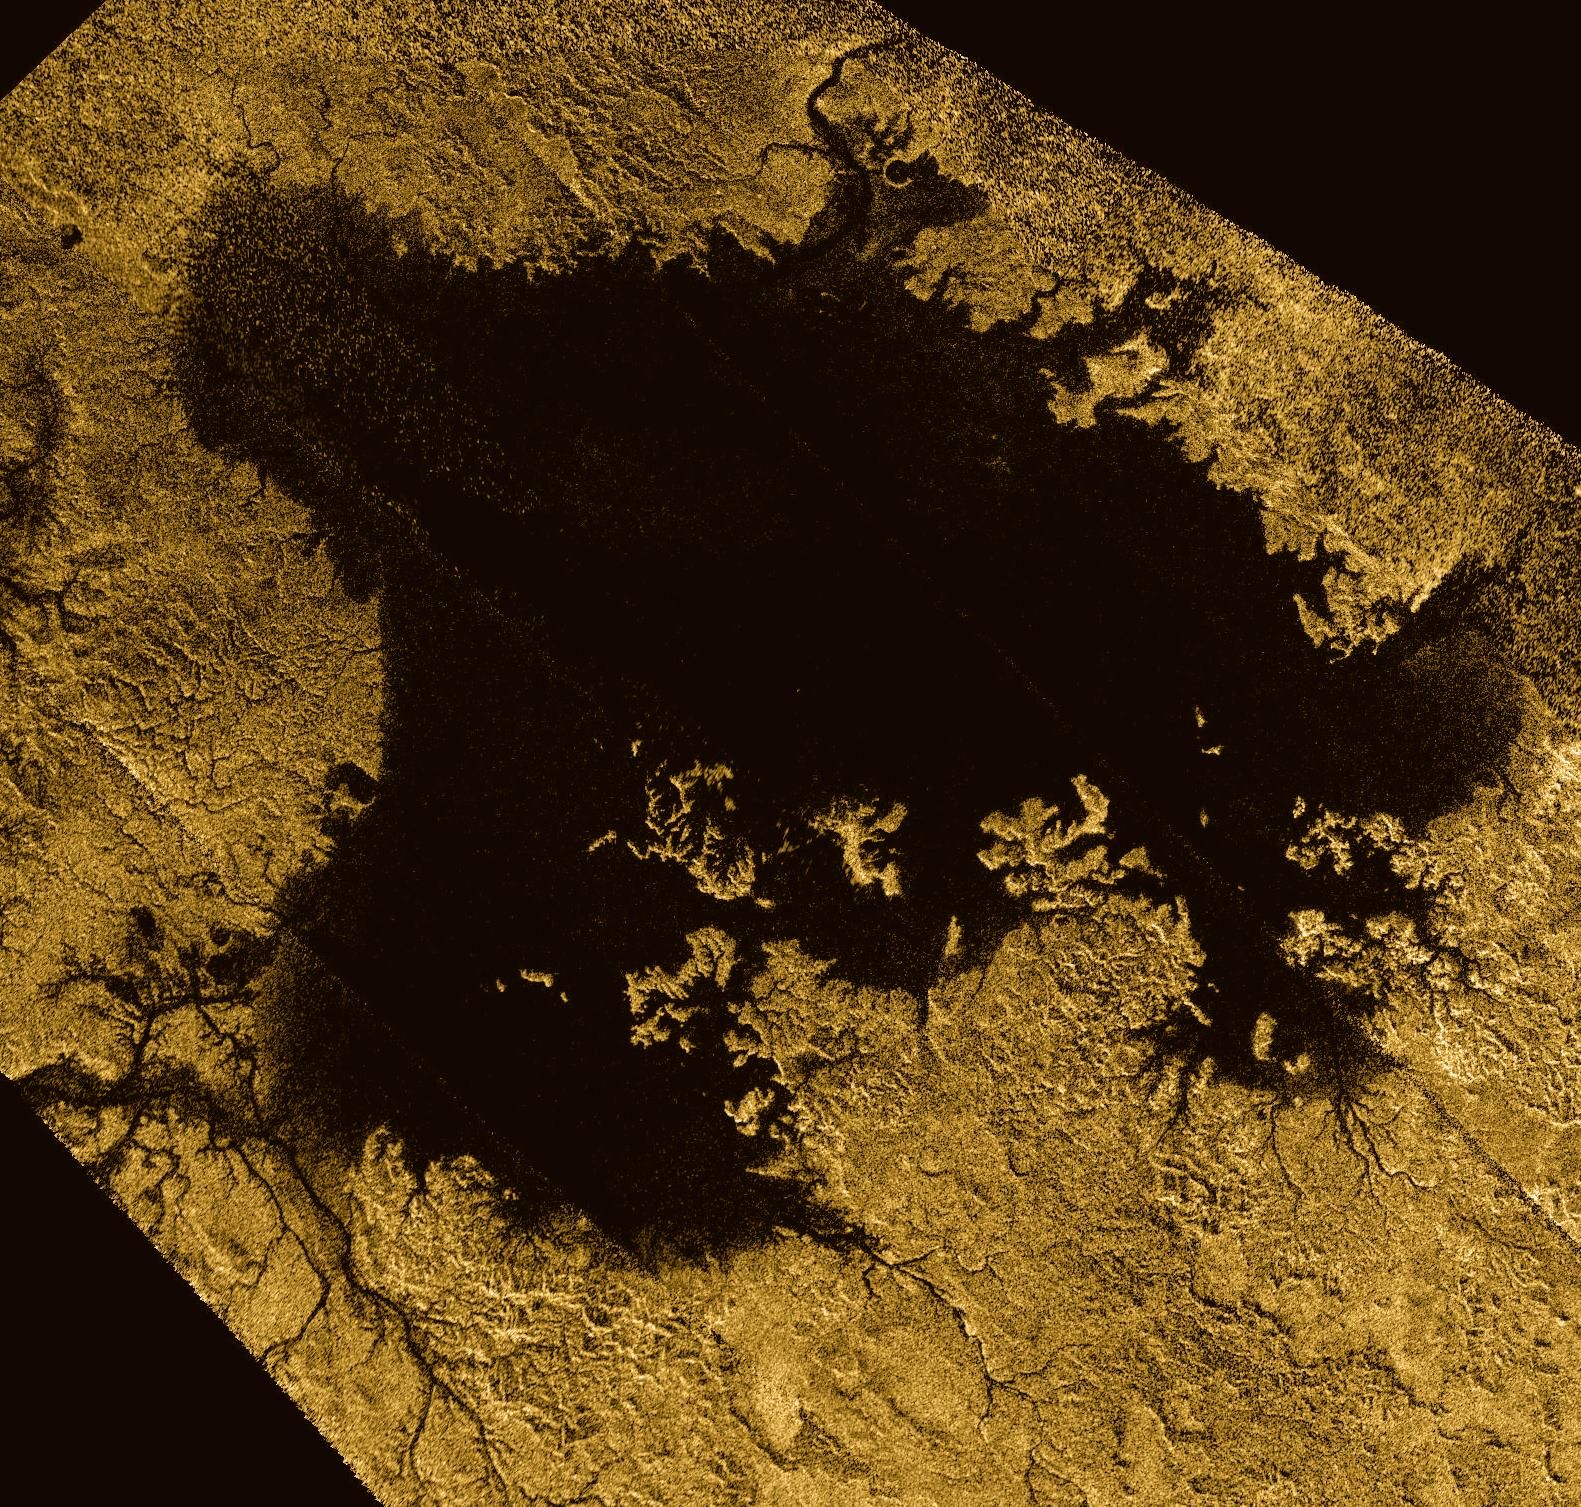 Повърхността на Титан има много езера и морета от течен метан